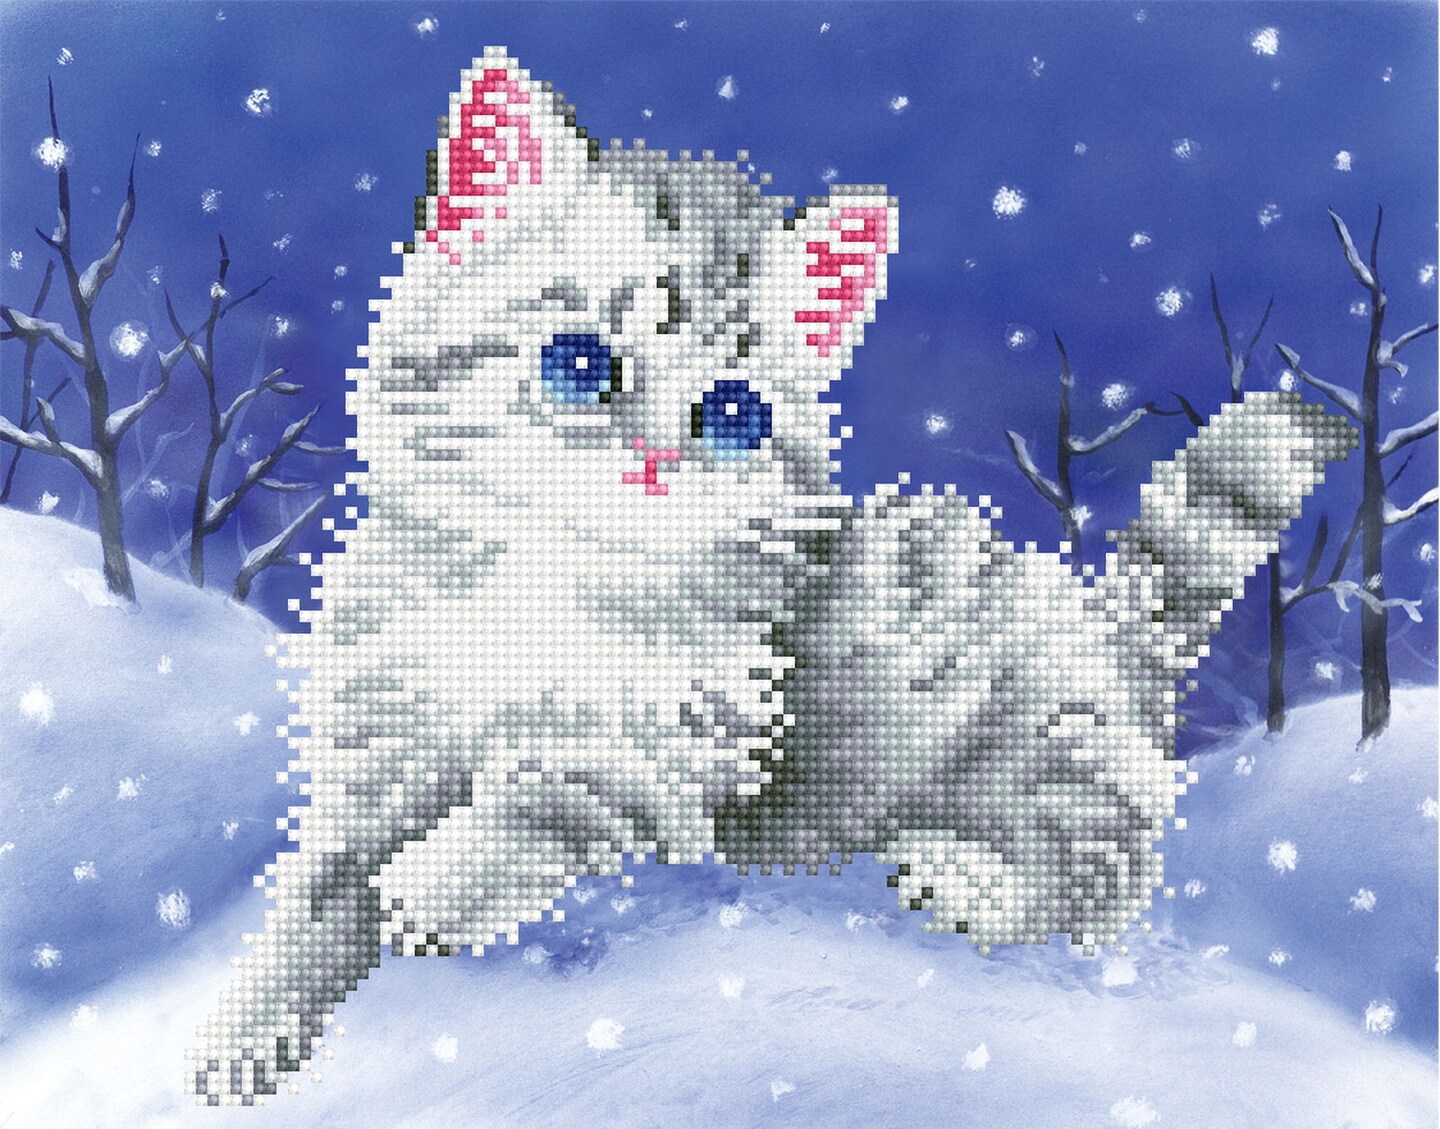 Diamond Painting Cute Kitten Running In The Snow – Diamonds Wizard